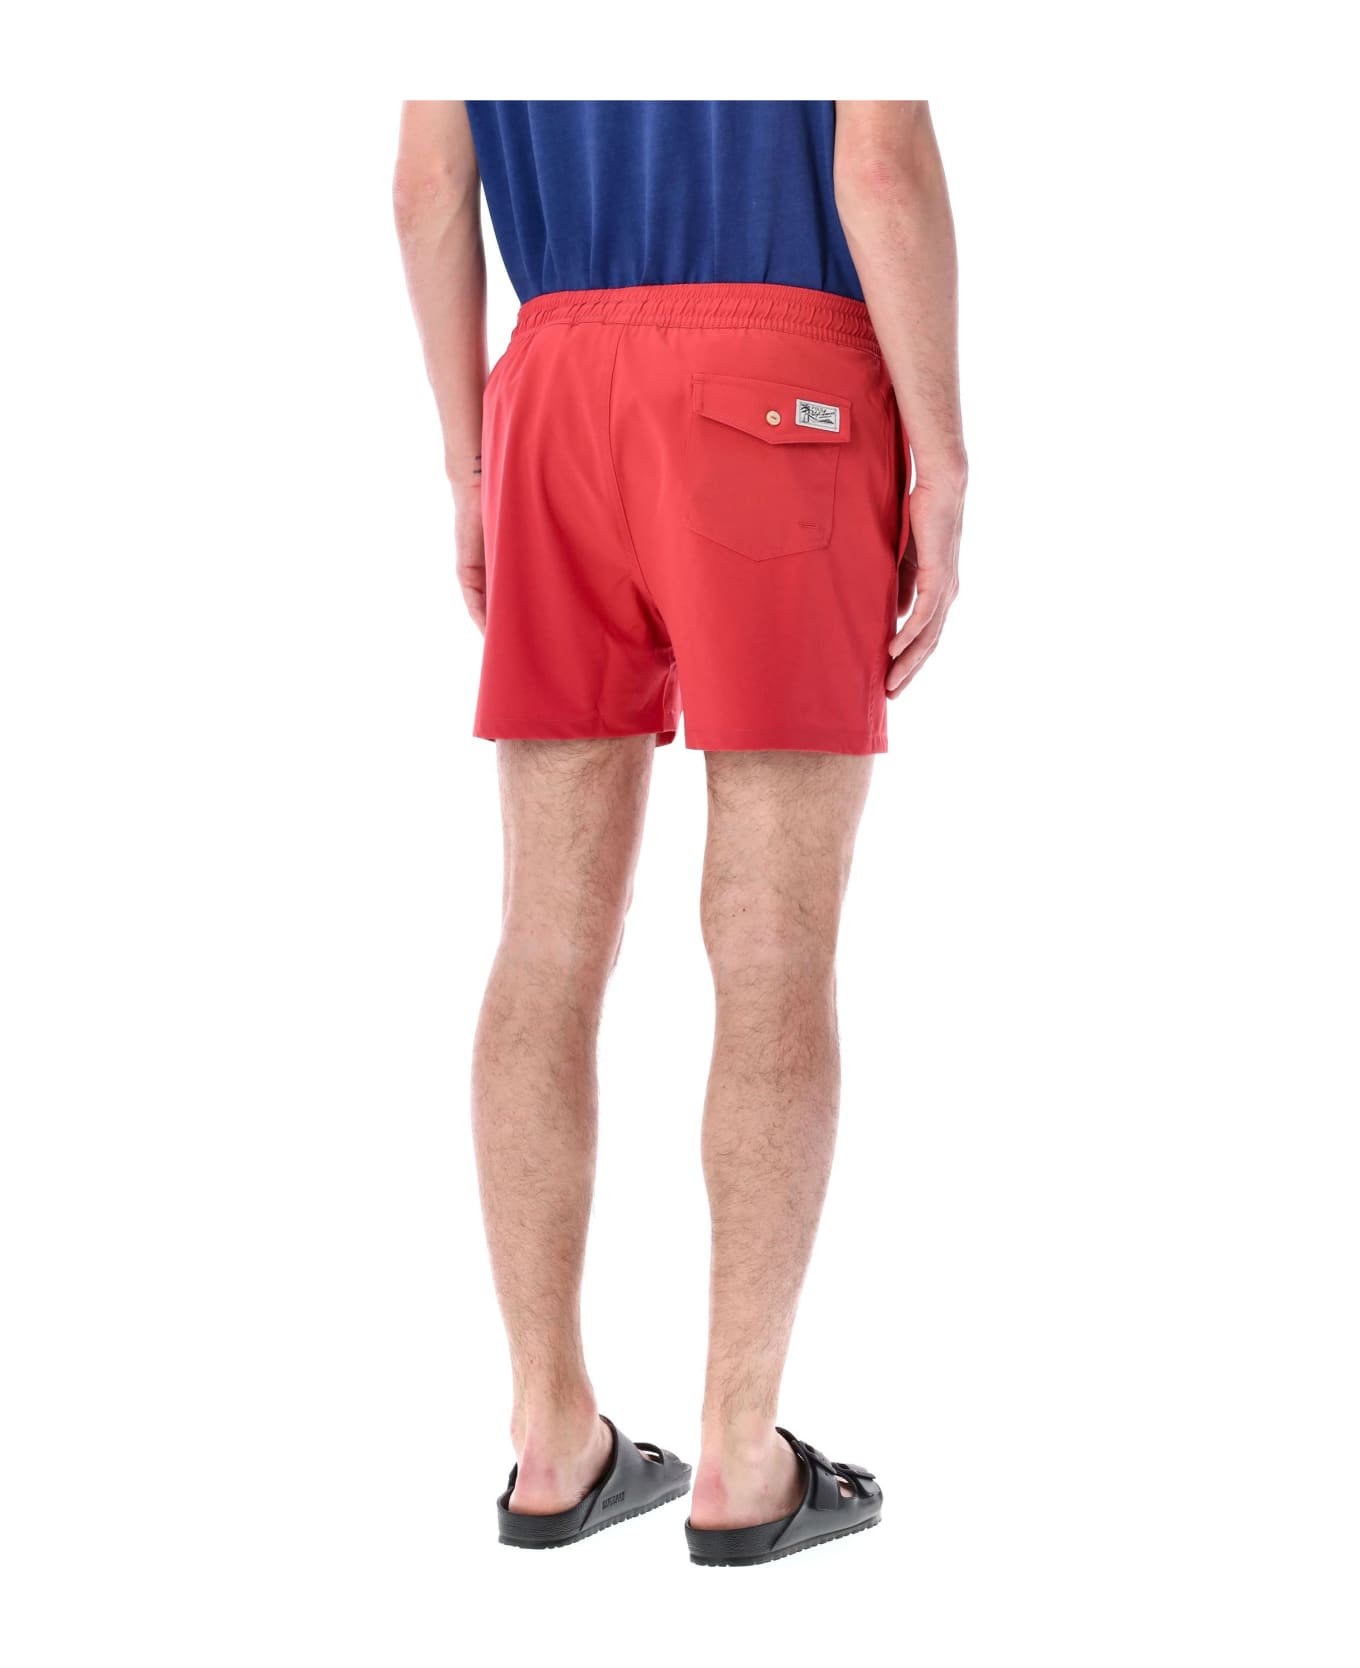 Polo Ralph Lauren Tarveler Mid Trunck Slim Fit - RED